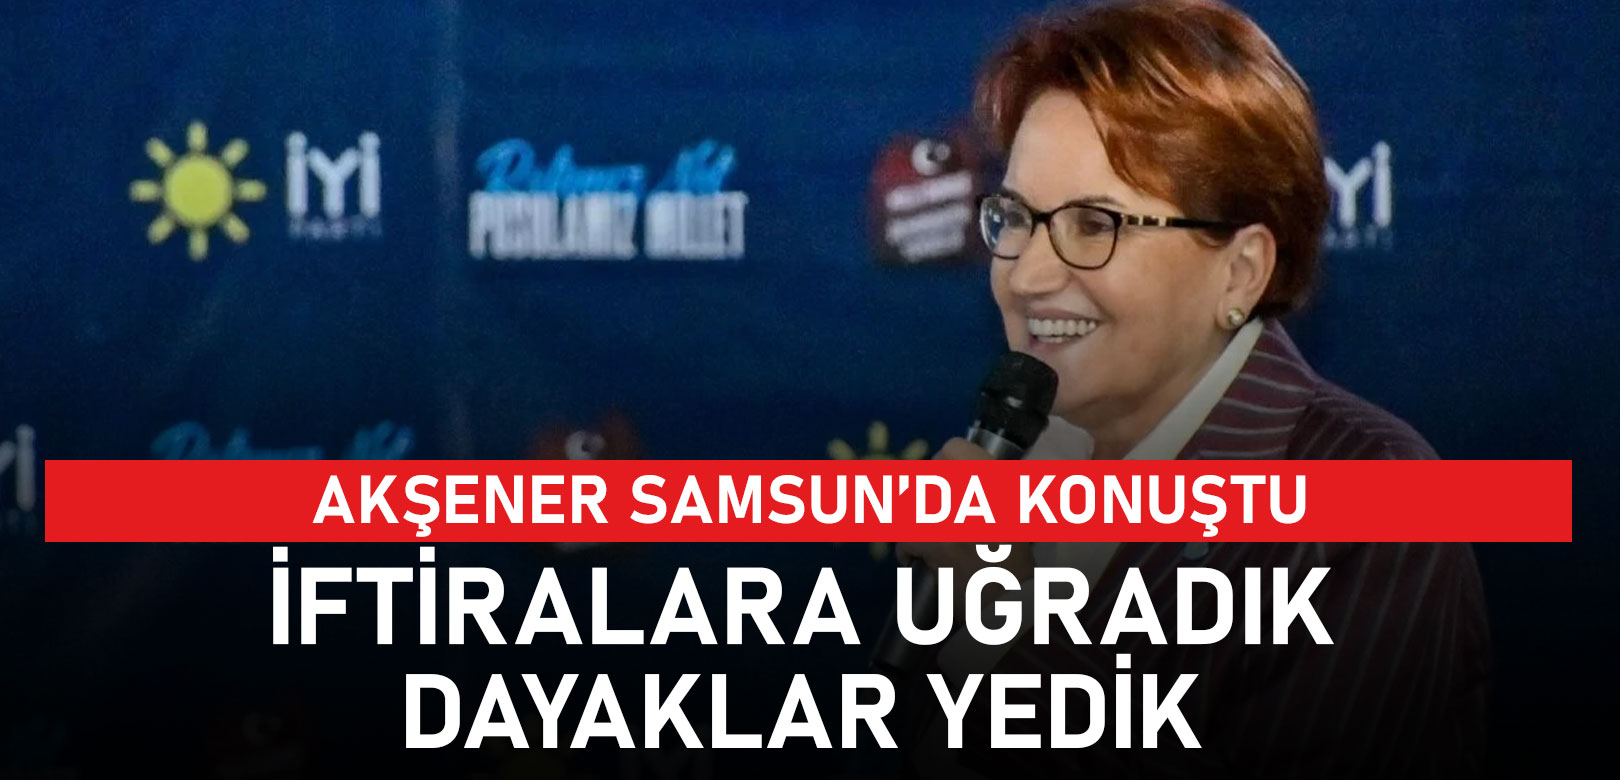 Akşener AKP ve CHP'yi DEM Parti üstünden eleştirdi: Birisi demokrasi diyor birisi de bebek katilinin mektubunu okutuyor